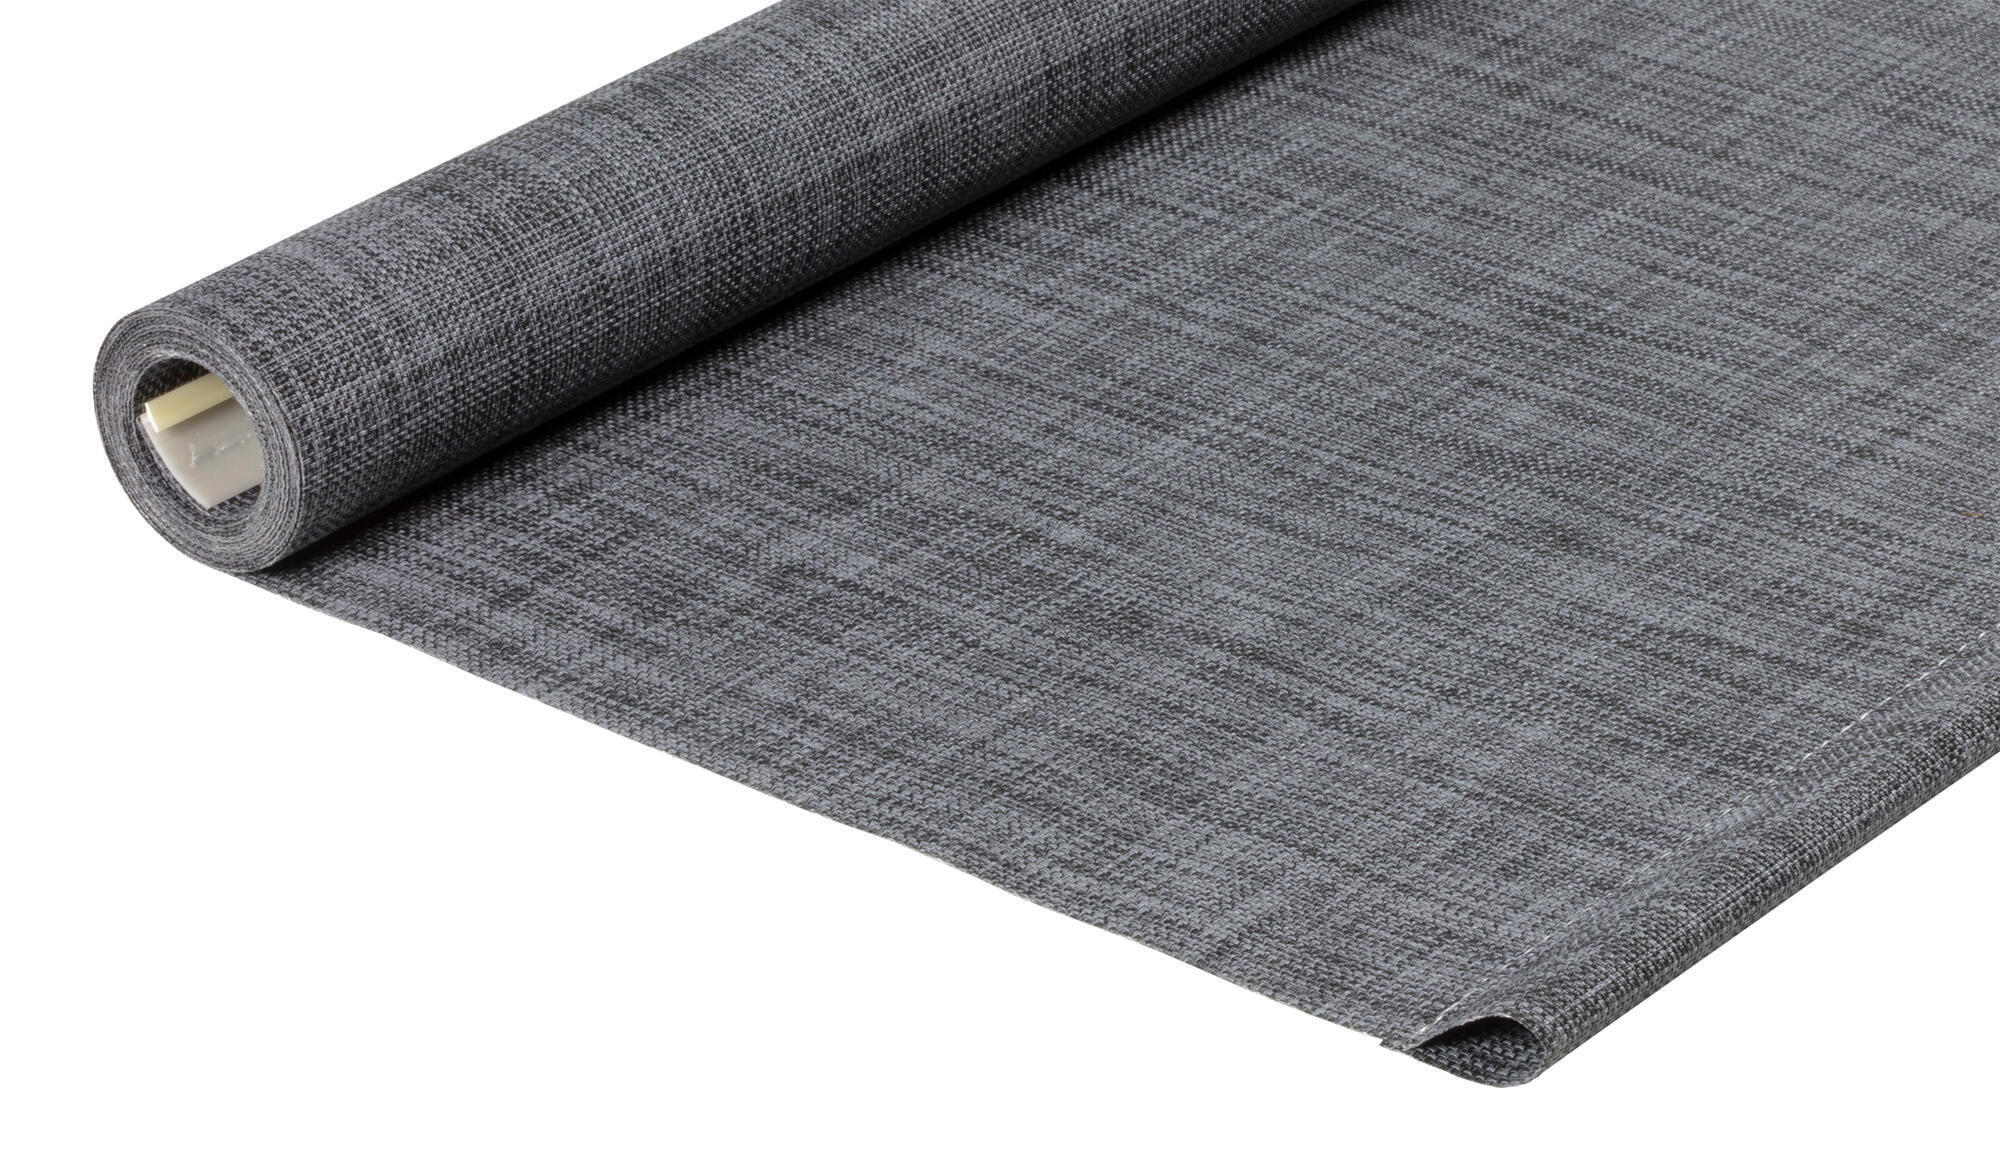 Tessuto per tende a rullo filtrante INSPIRE Puebla grigio / argento 50.8 x 190 cm - 3